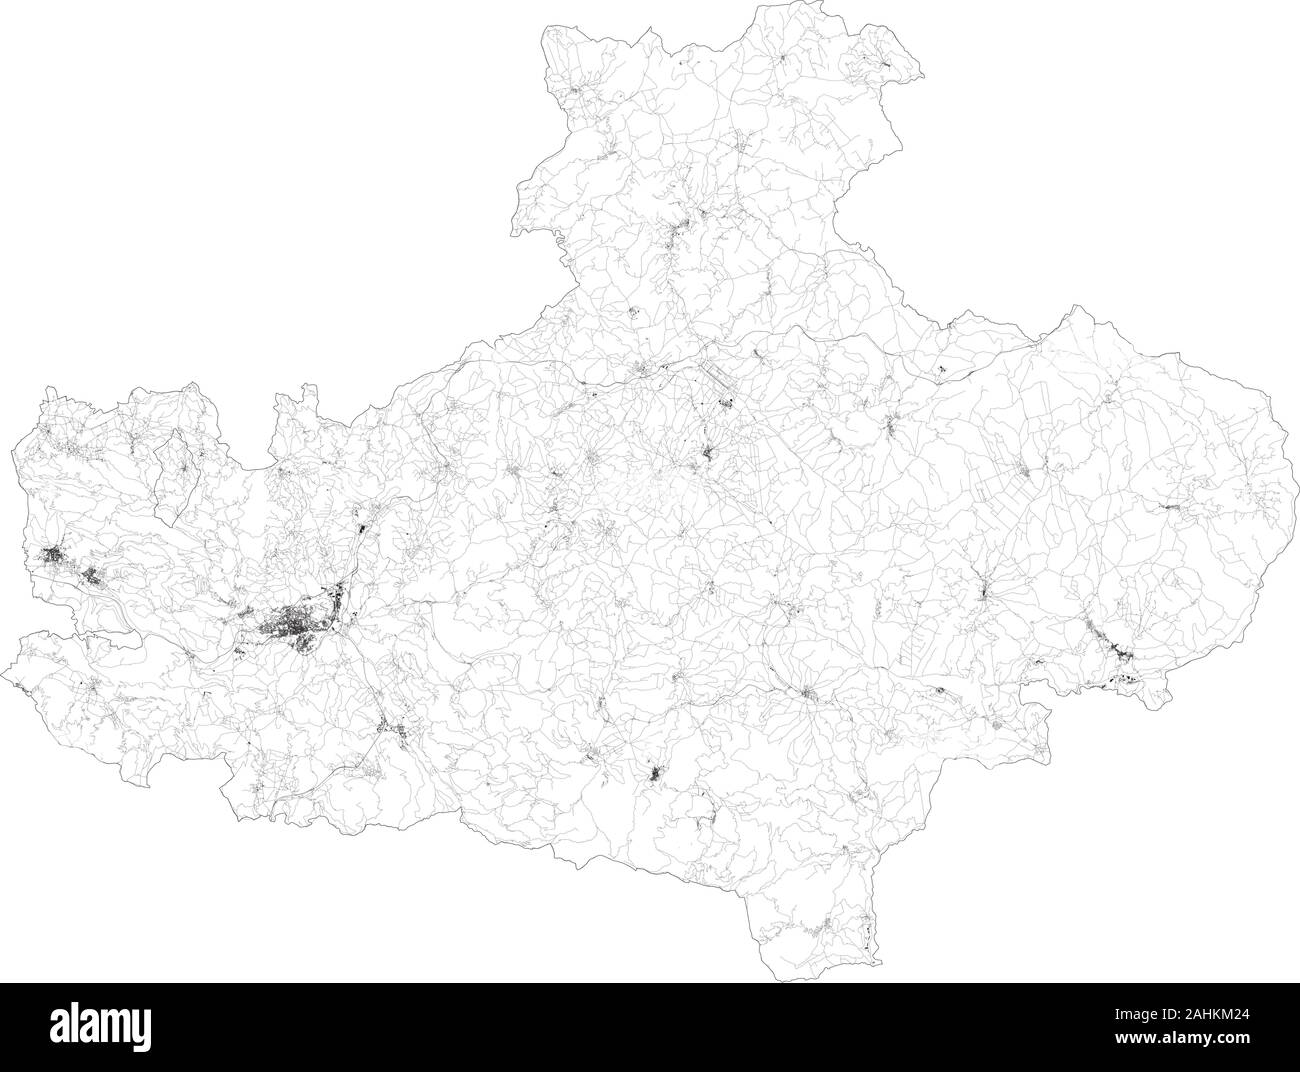 Mappa satellitare della provincia di Avellino città e strade, edifici e strade di collegamento delle aree circostanti. Regione Campania, Italia. Mappa stradale Illustrazione Vettoriale